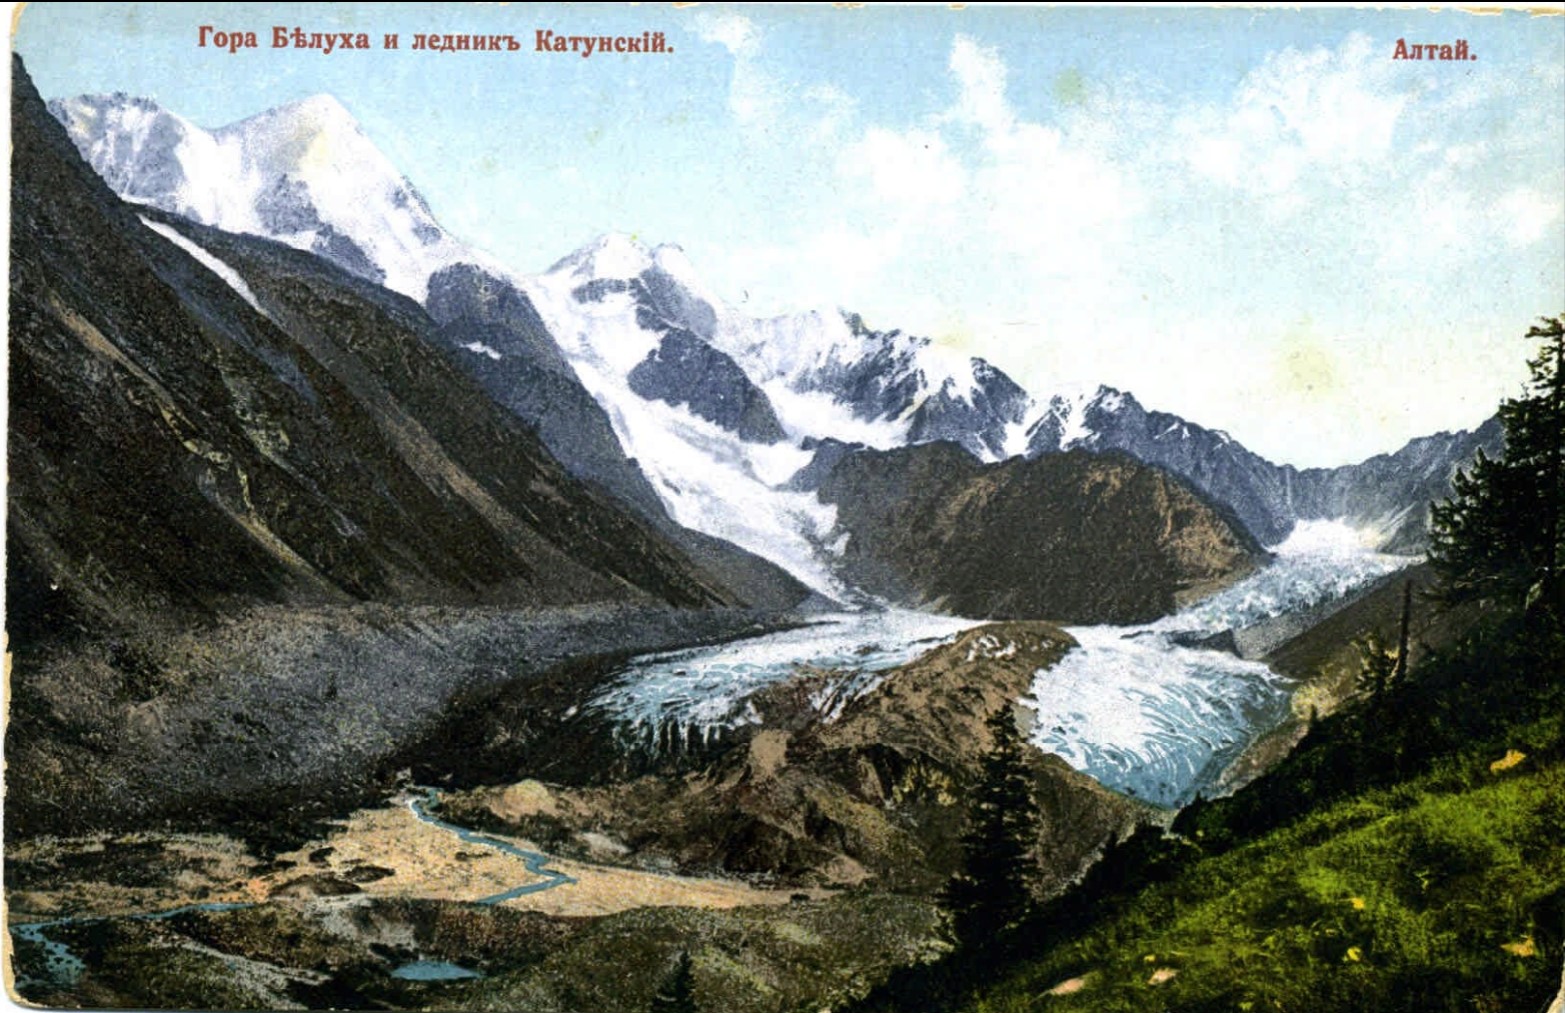 Гора Белуха и ледник Катунский